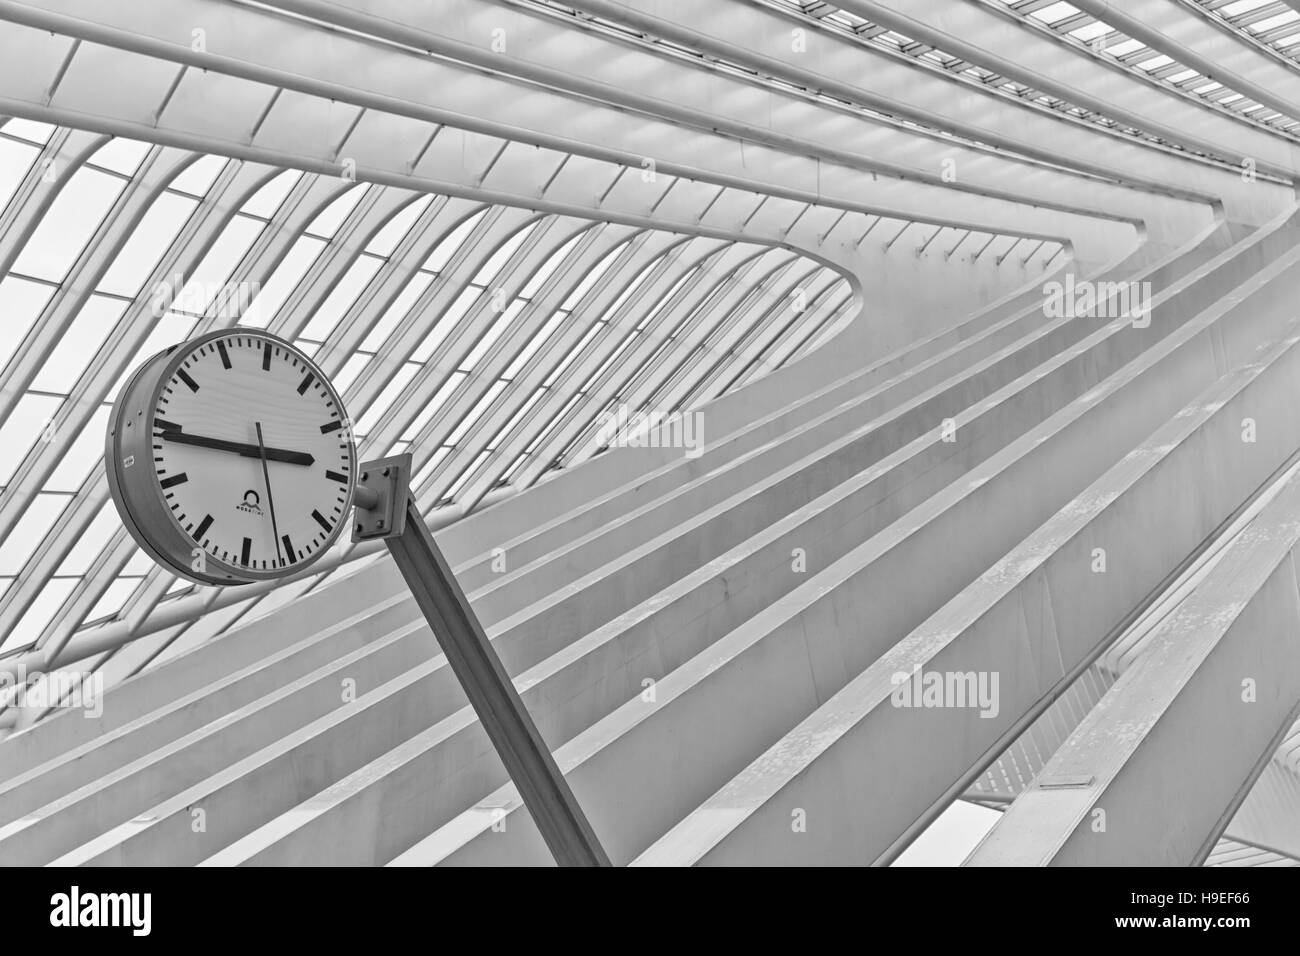 Liège, Belgique - Décembre 2014 : Abstract view sur le toit avec gare horloge de la gare de Liège-Guillemins, conçue par Santiago Calatrava. Banque D'Images